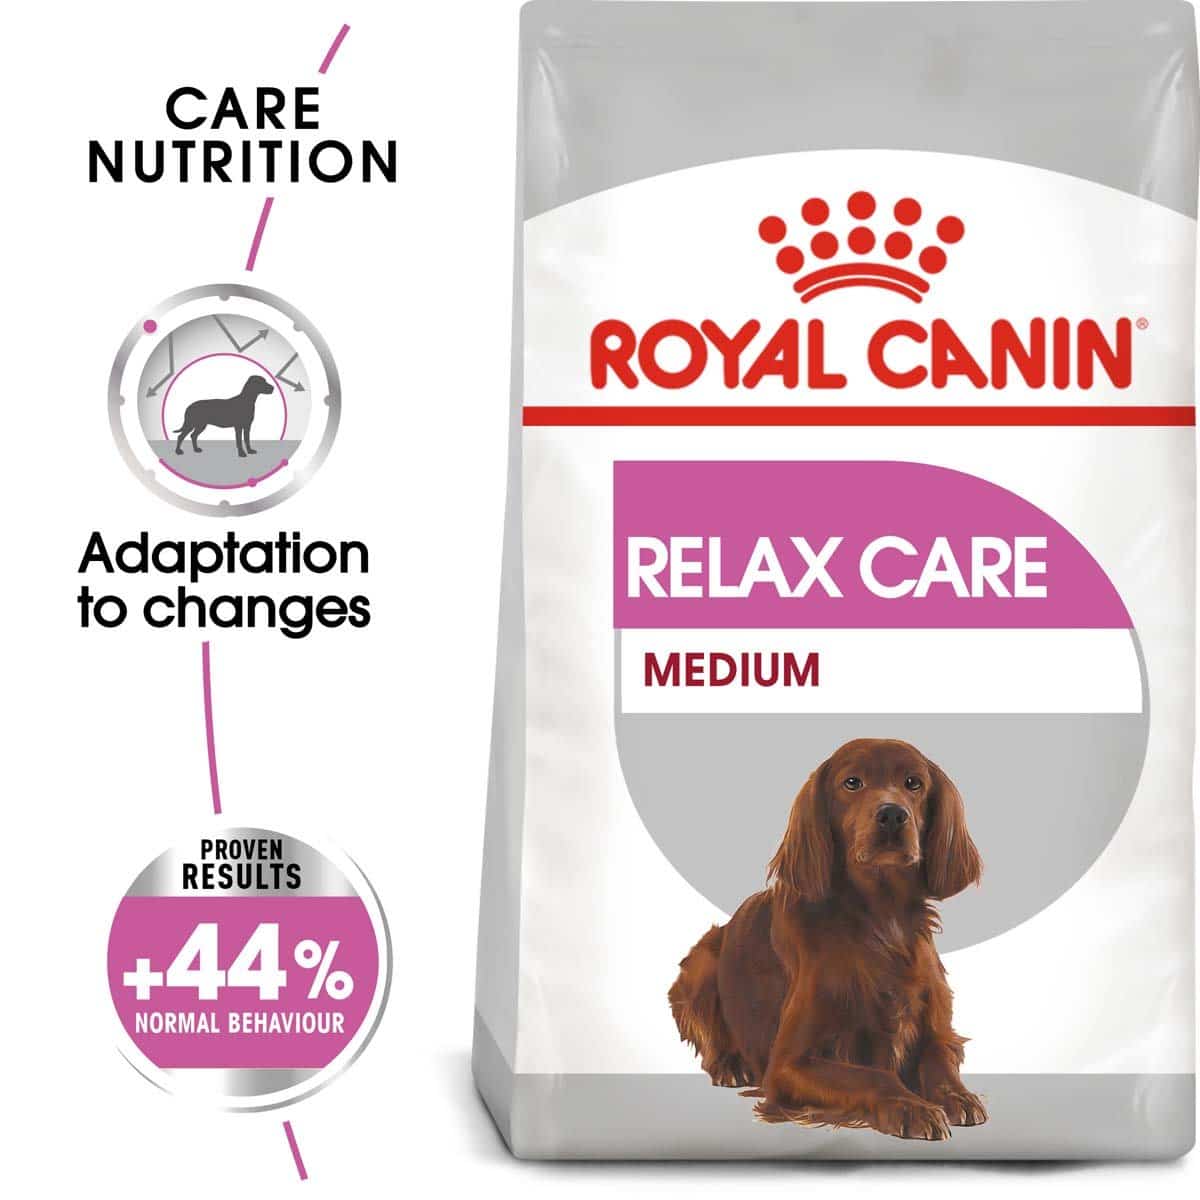 ROYAL CANIN RELAX CARE MEDIUM Trockenfutter für mittelgroße Hunde in unruhigem Umfeld 3kg